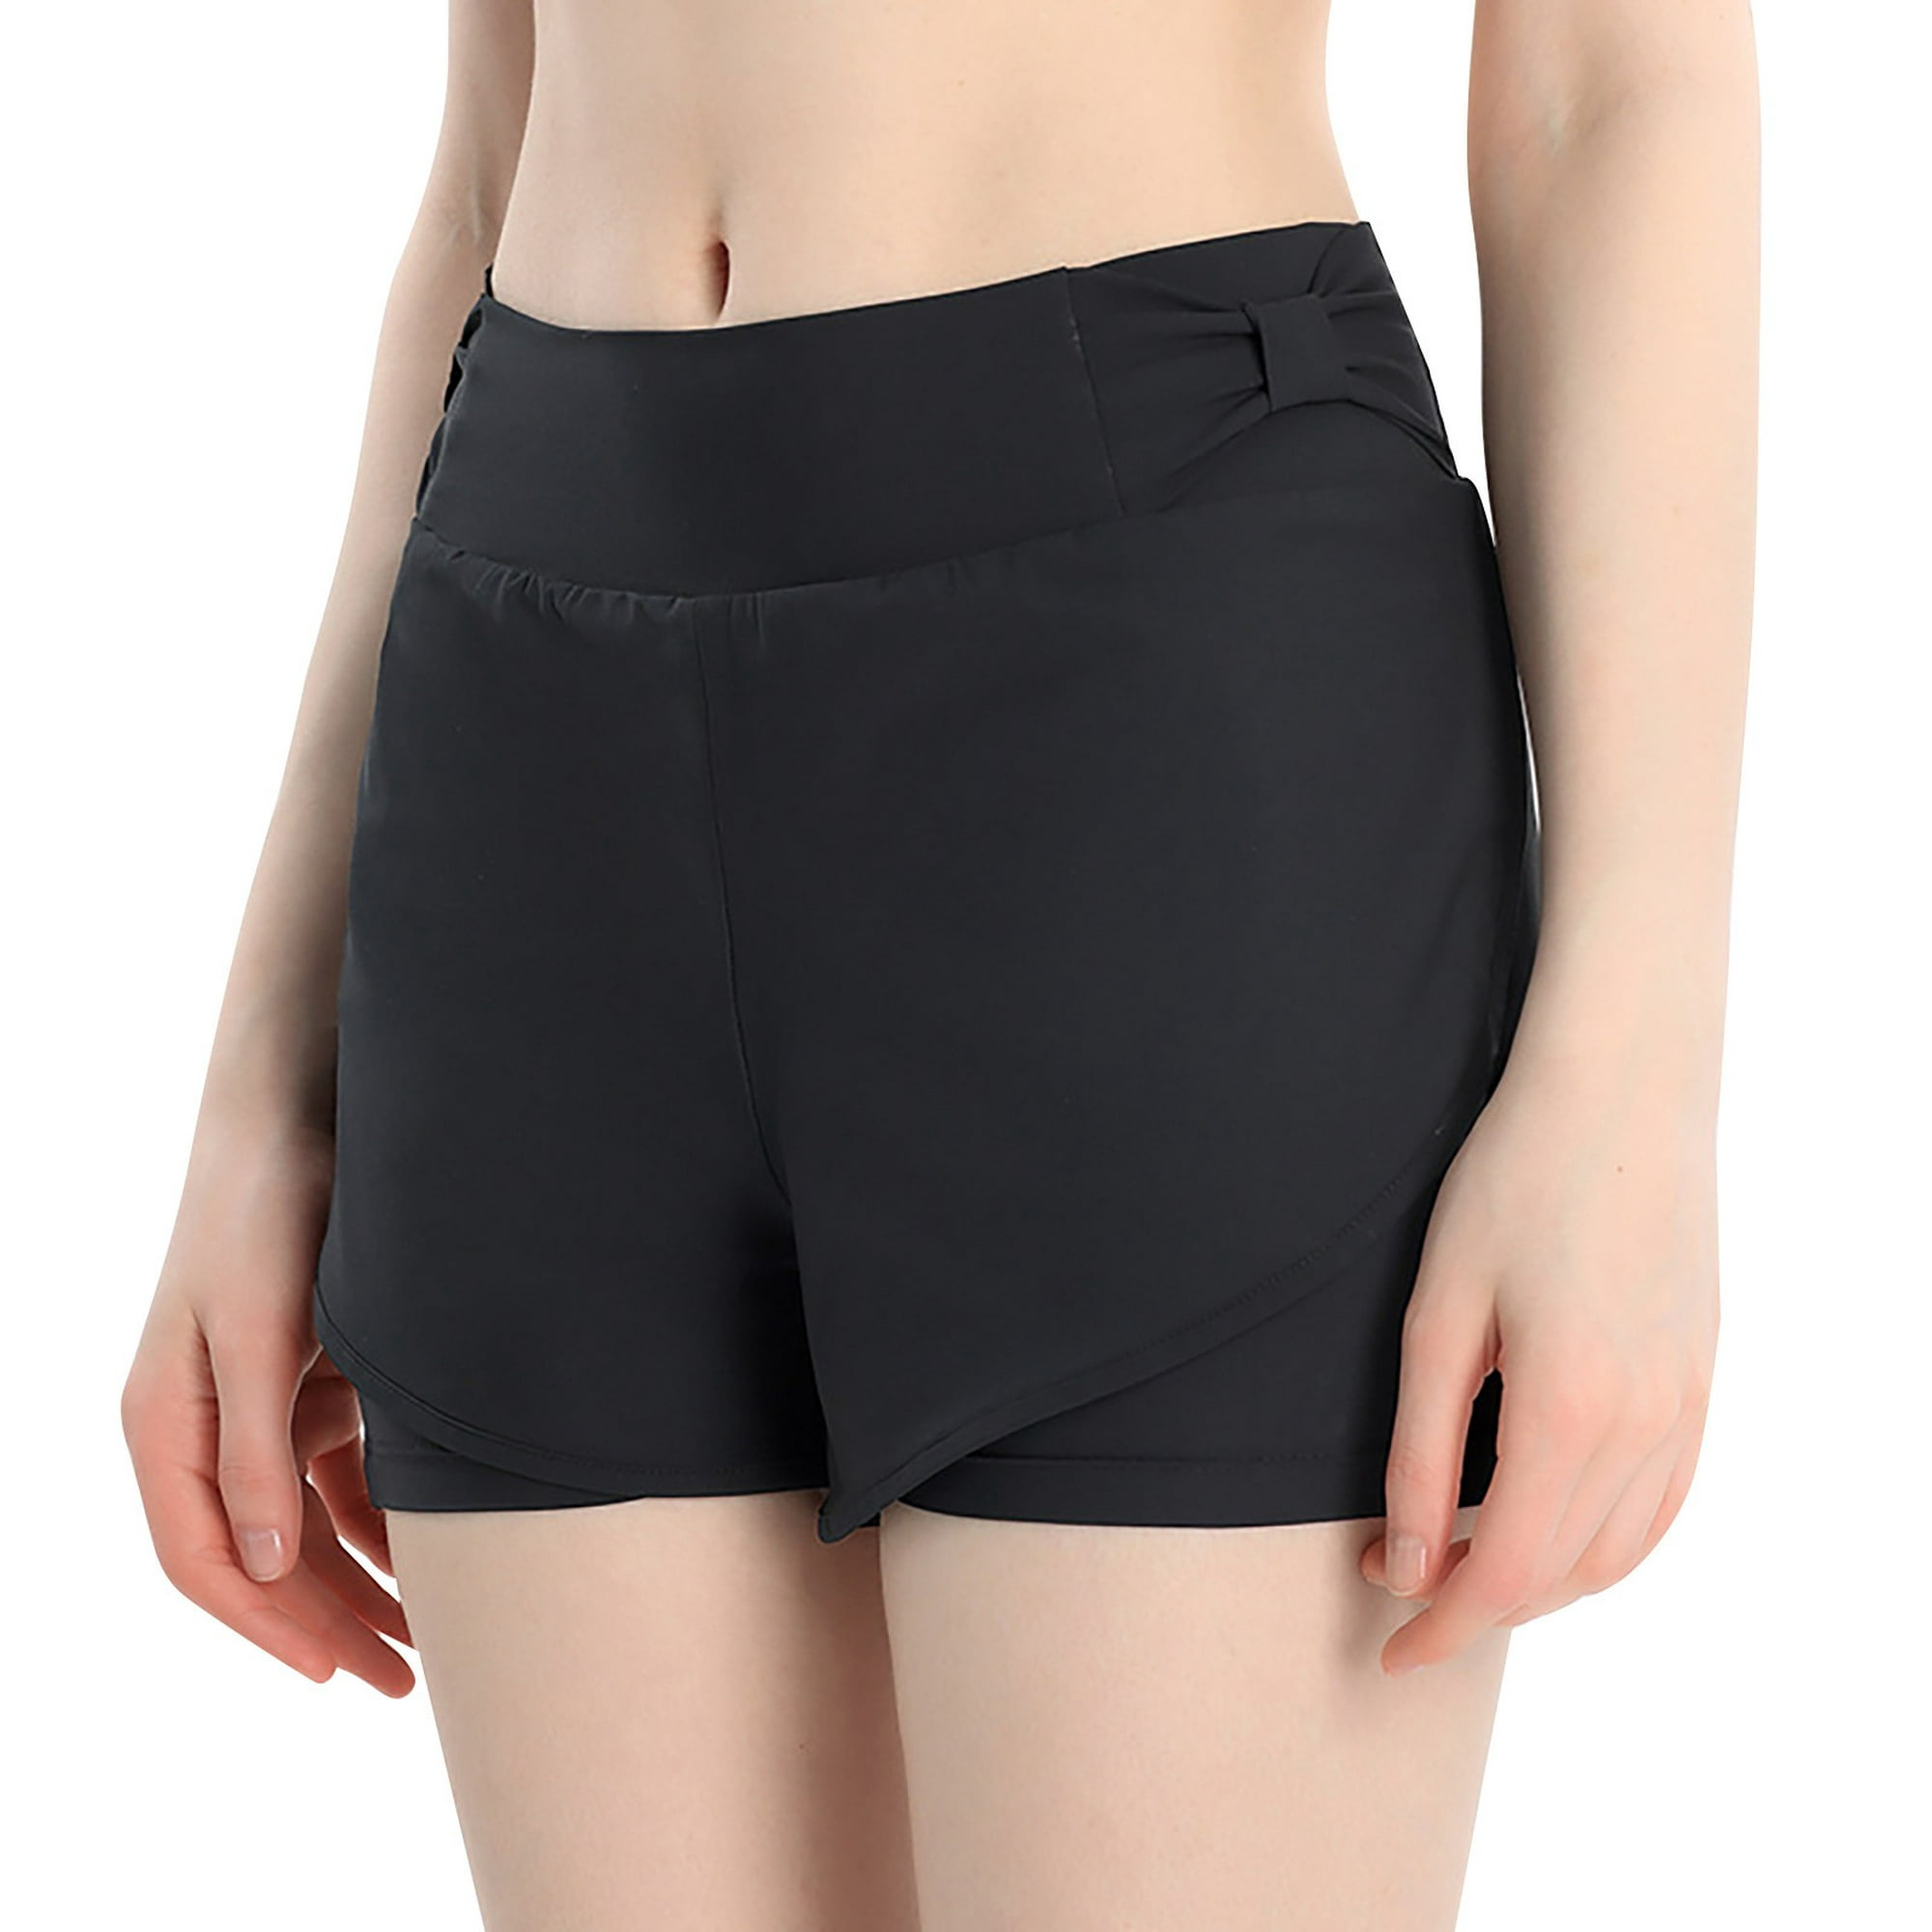 Pantalones cortos deportivos de doble capa para mujer, 2 en 1, para  entrenamiento, correr, yoga, gimnasio, deportes, con bolsillo